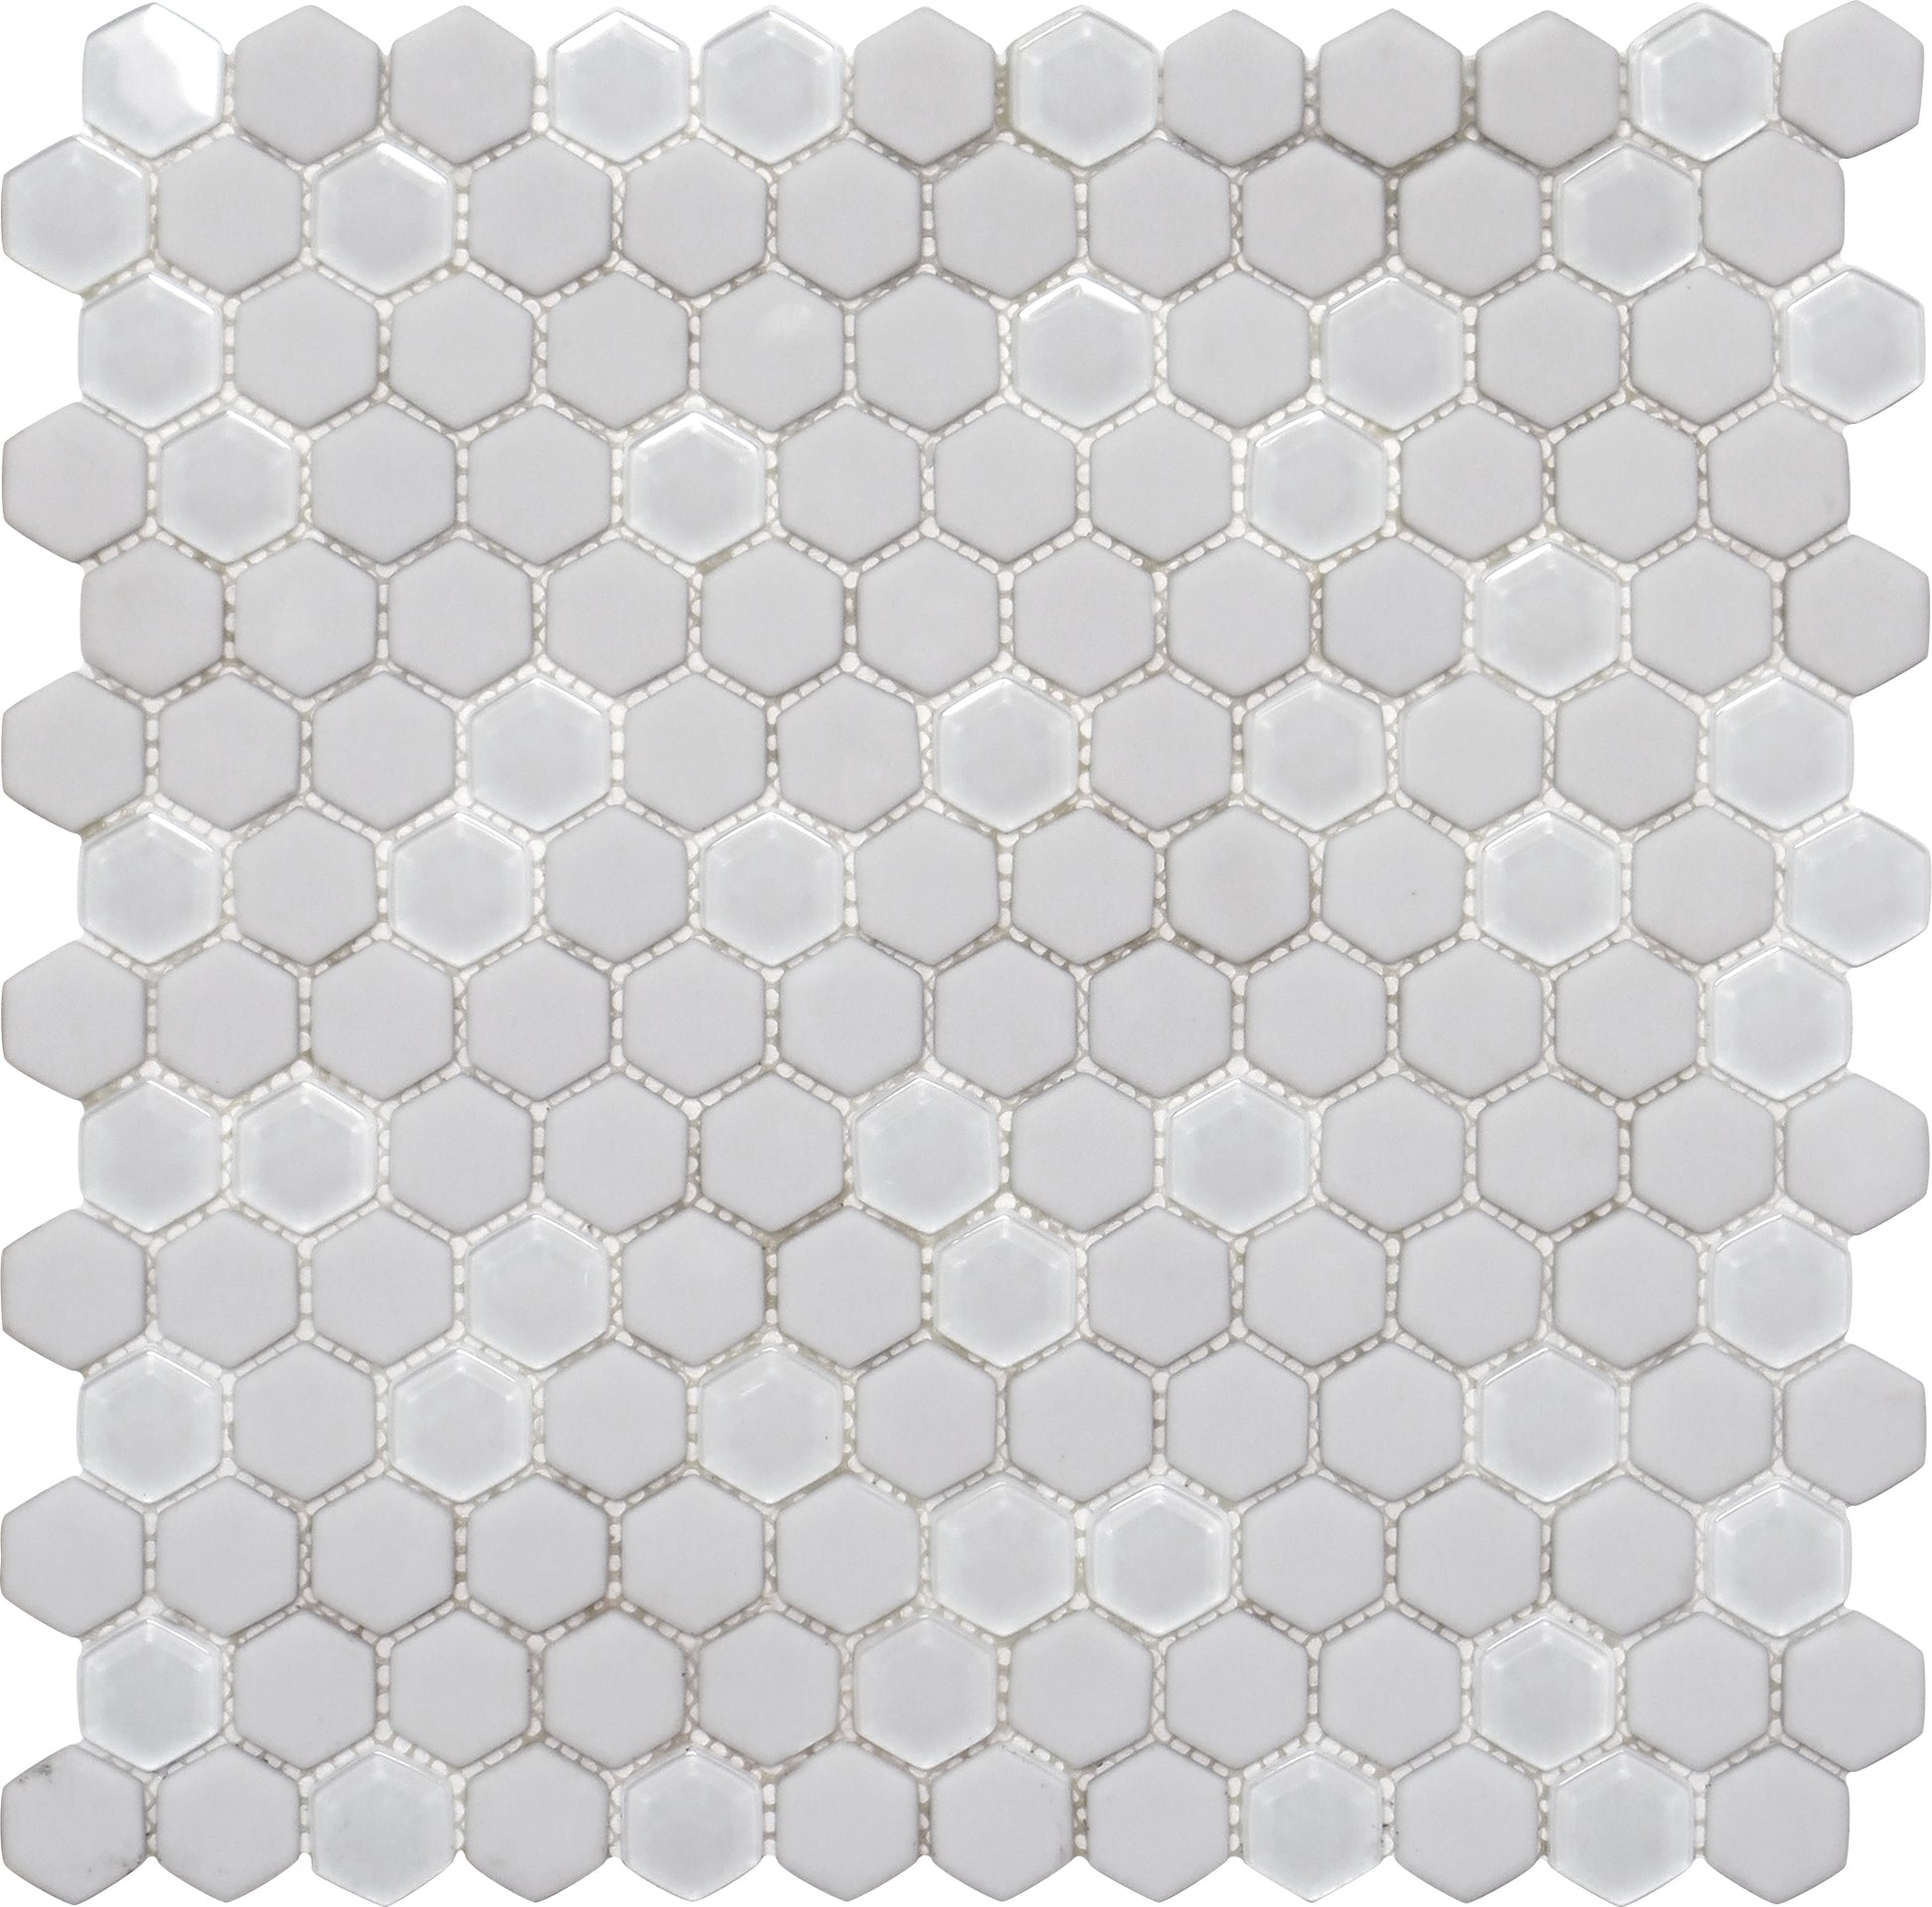 Cotton White Hexagon Tile